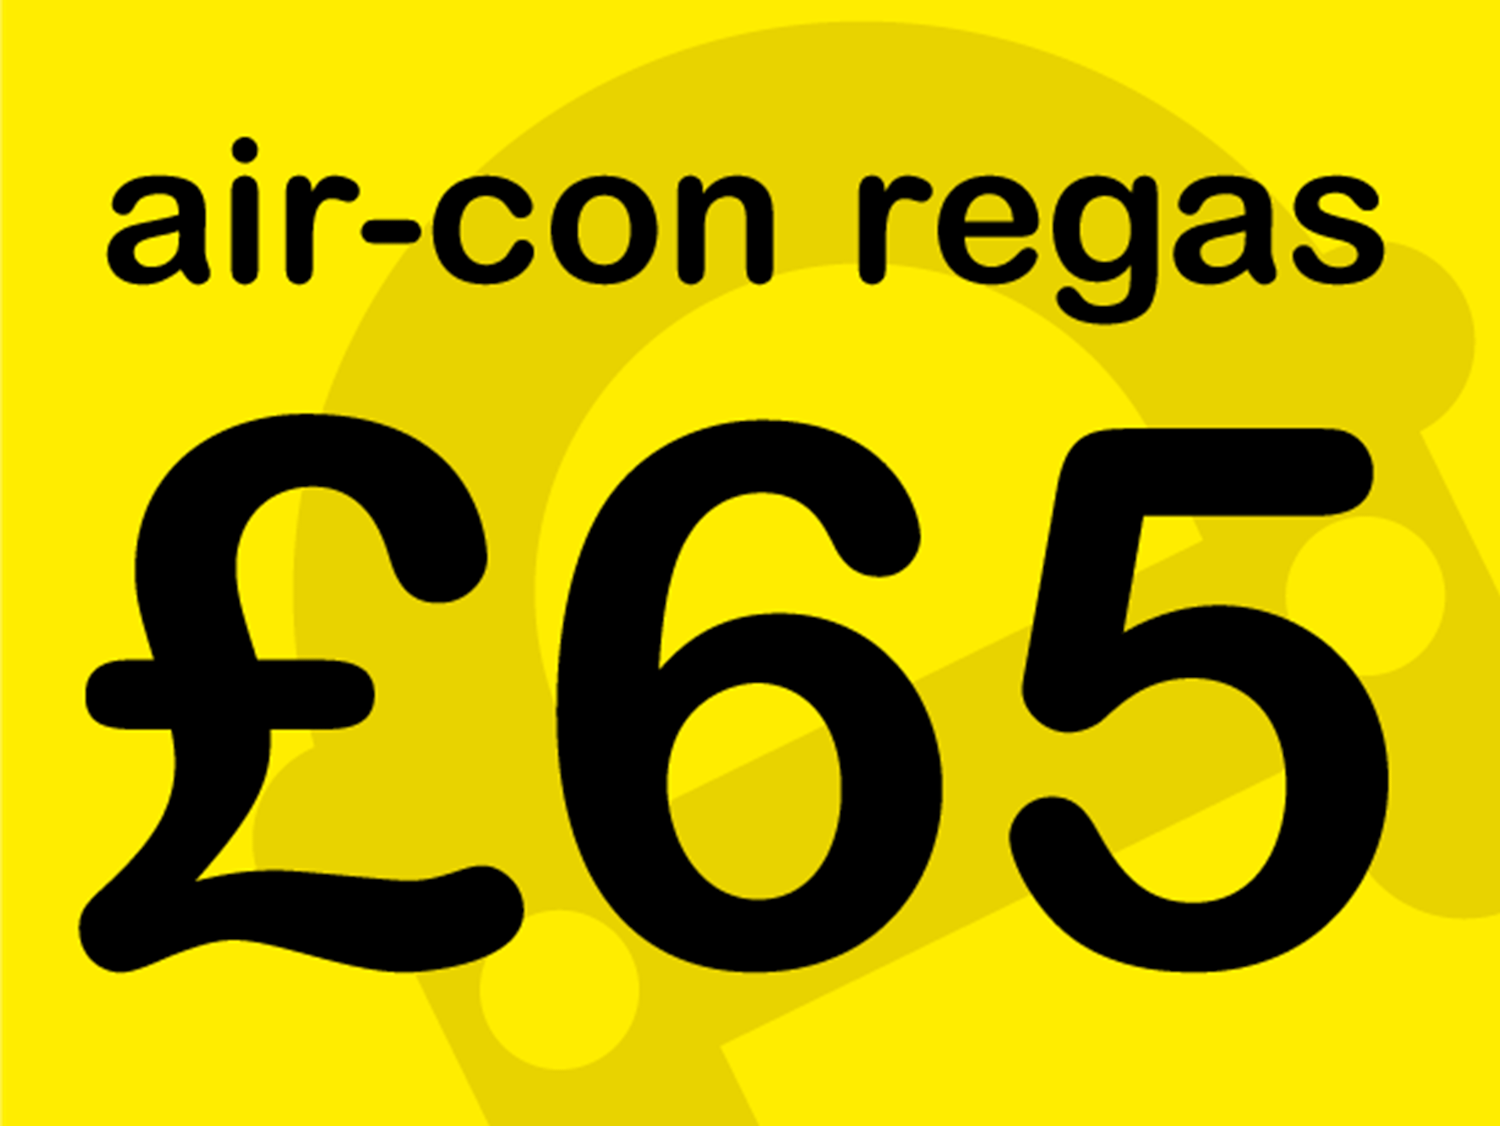 Air con regas only £65